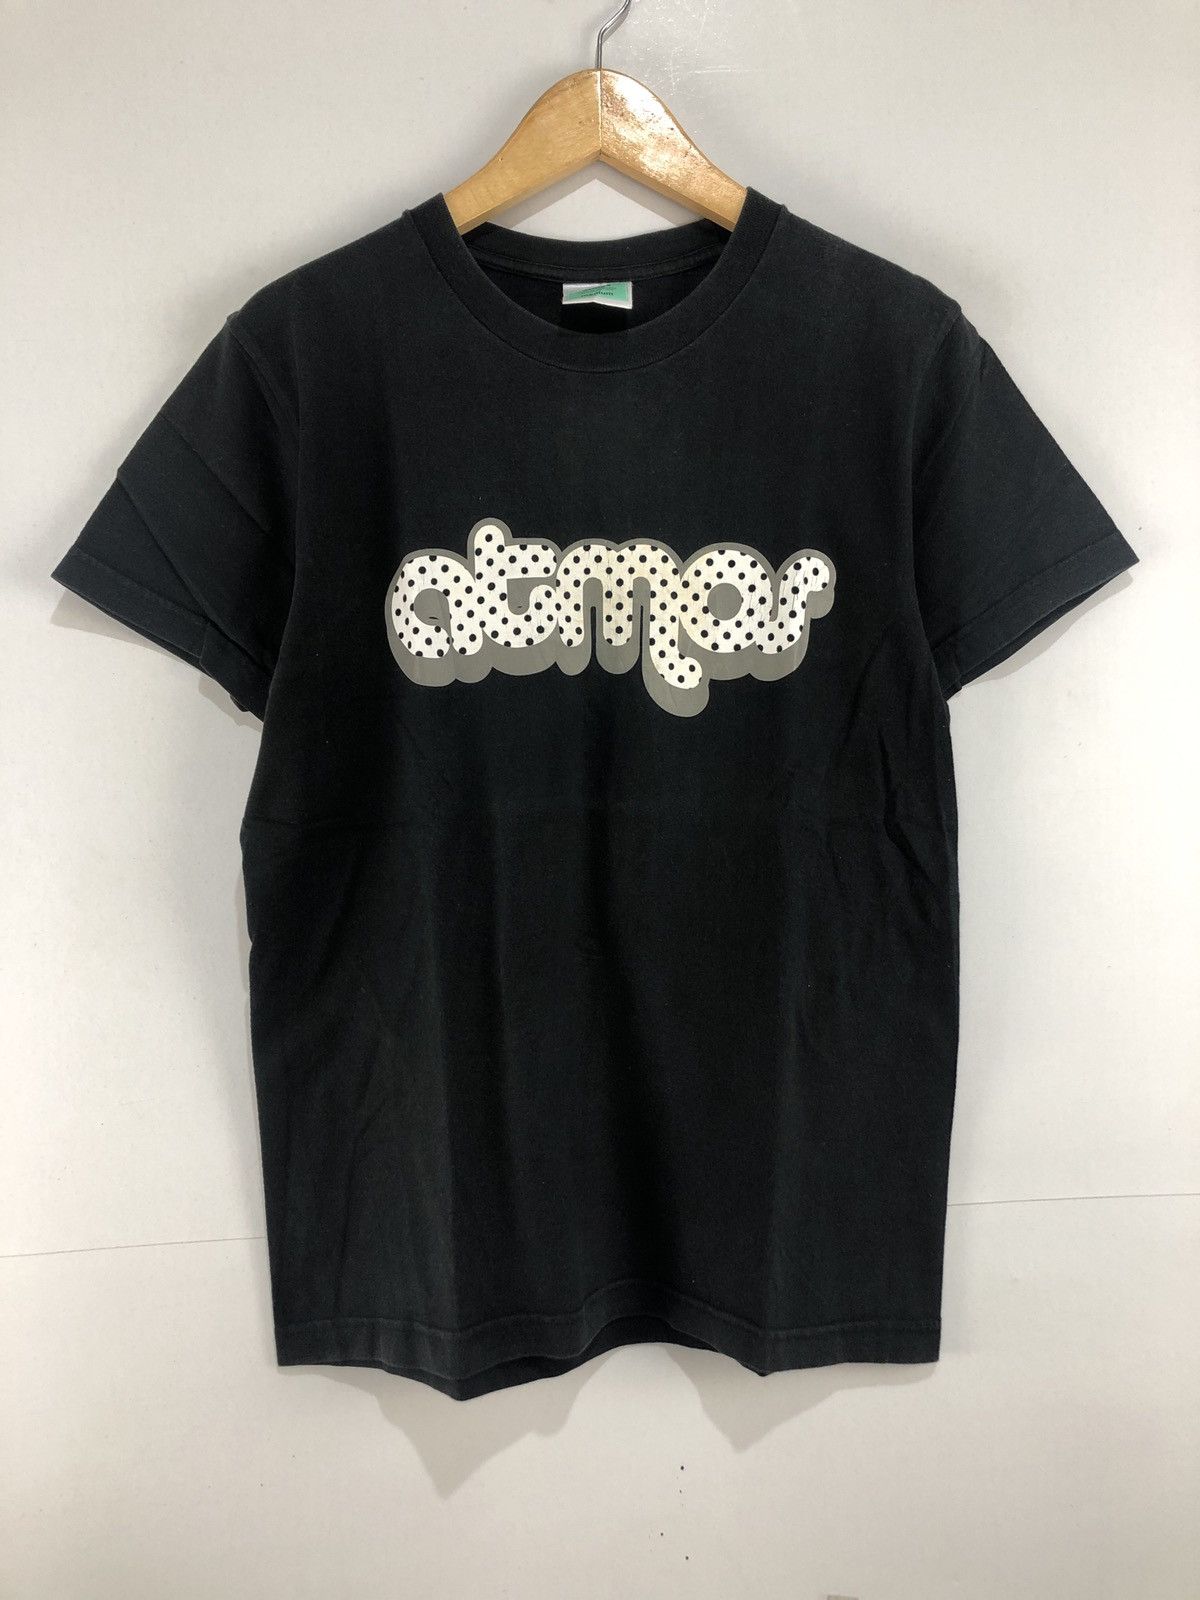 Atmos Atmos T-Shirt | Grailed